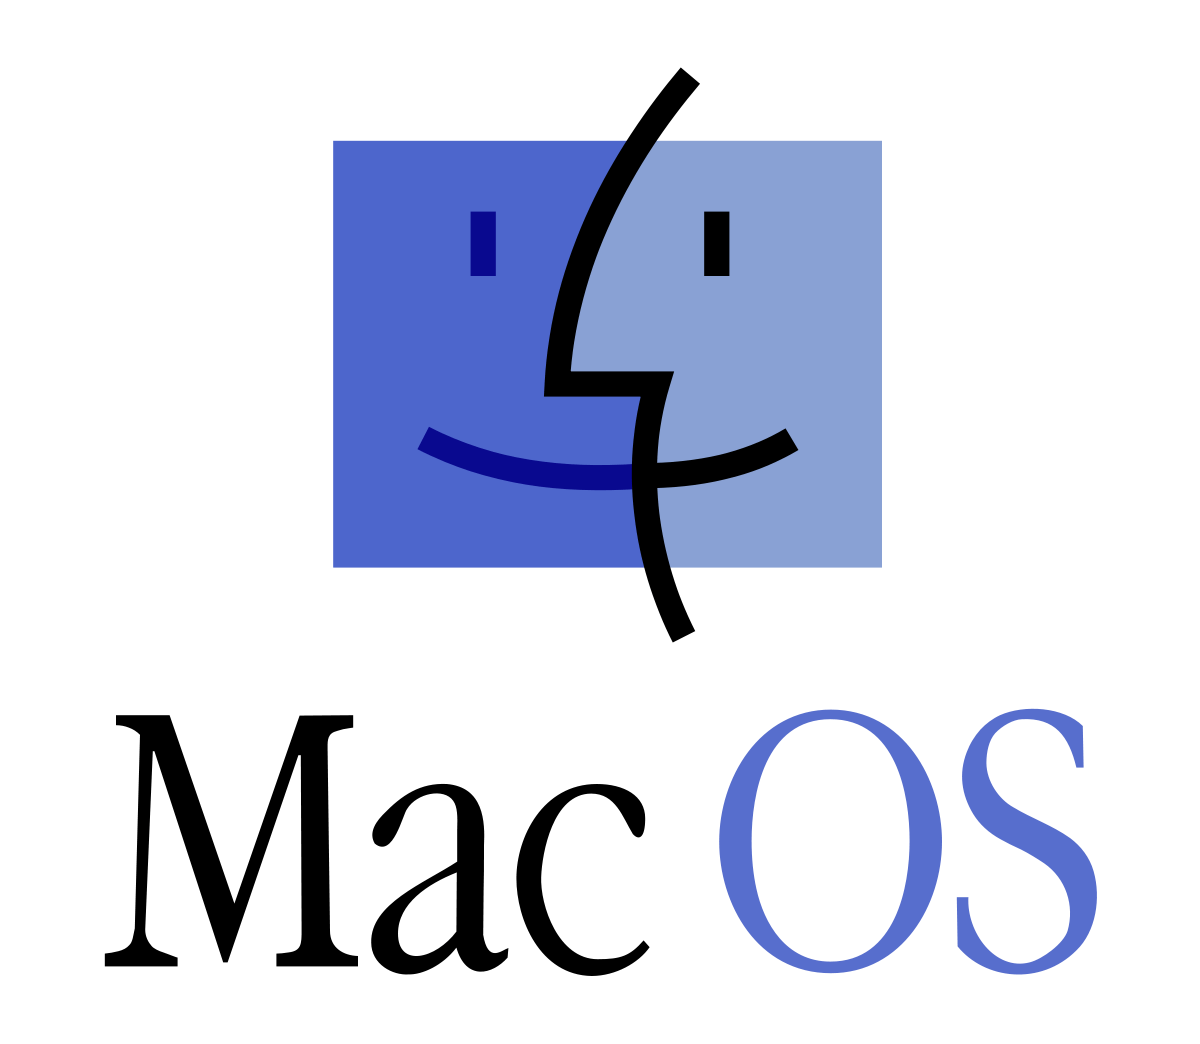 Macos Logo - Classic Mac OS